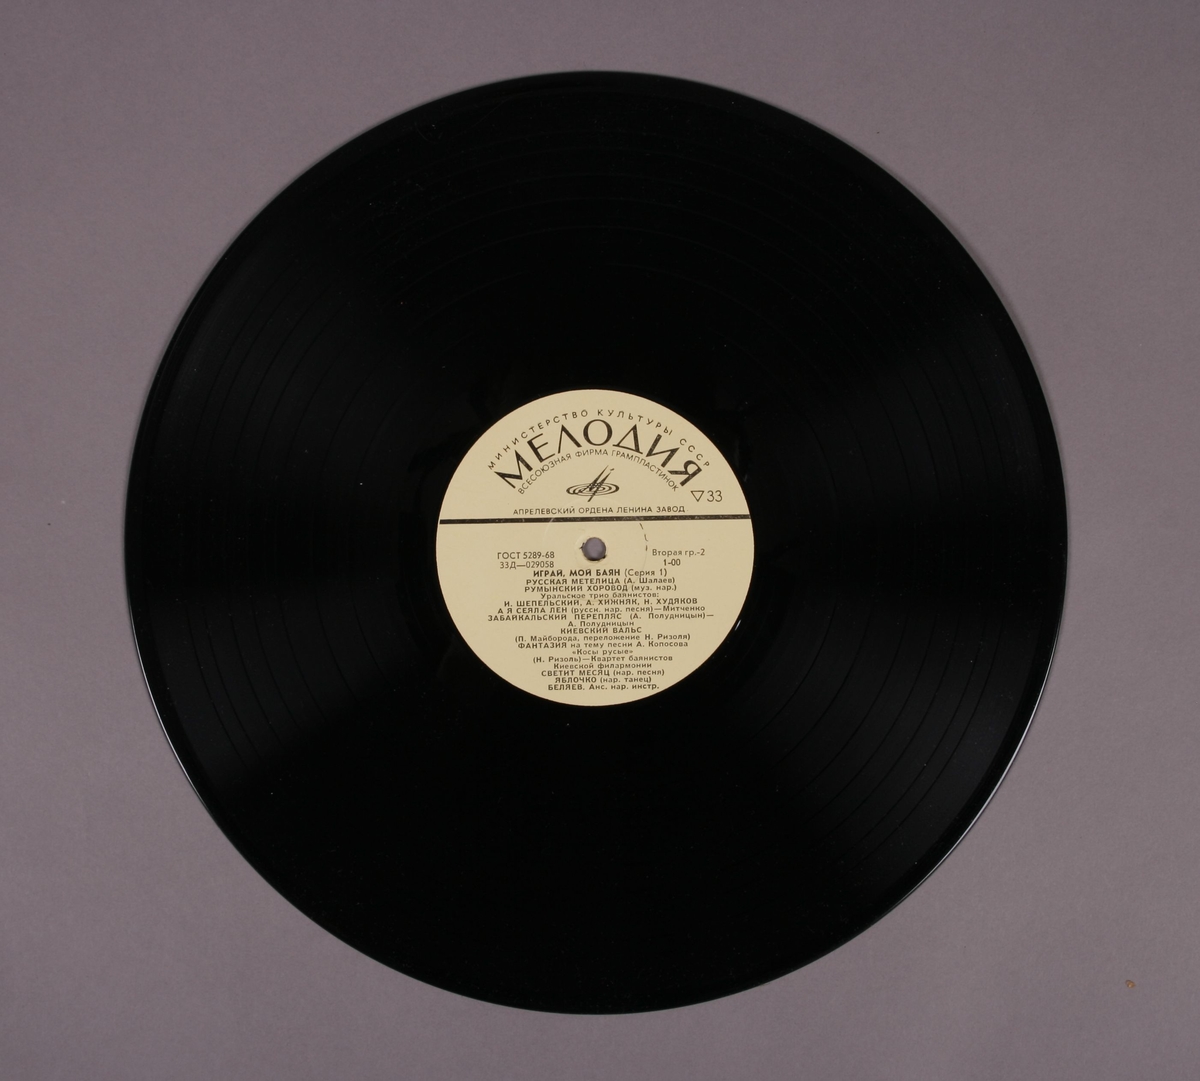 Grammofonplate i svart vinyl og plateomslag av papir. Plata ligger i en uoriginal papirlomme stemplet "Angel Records".